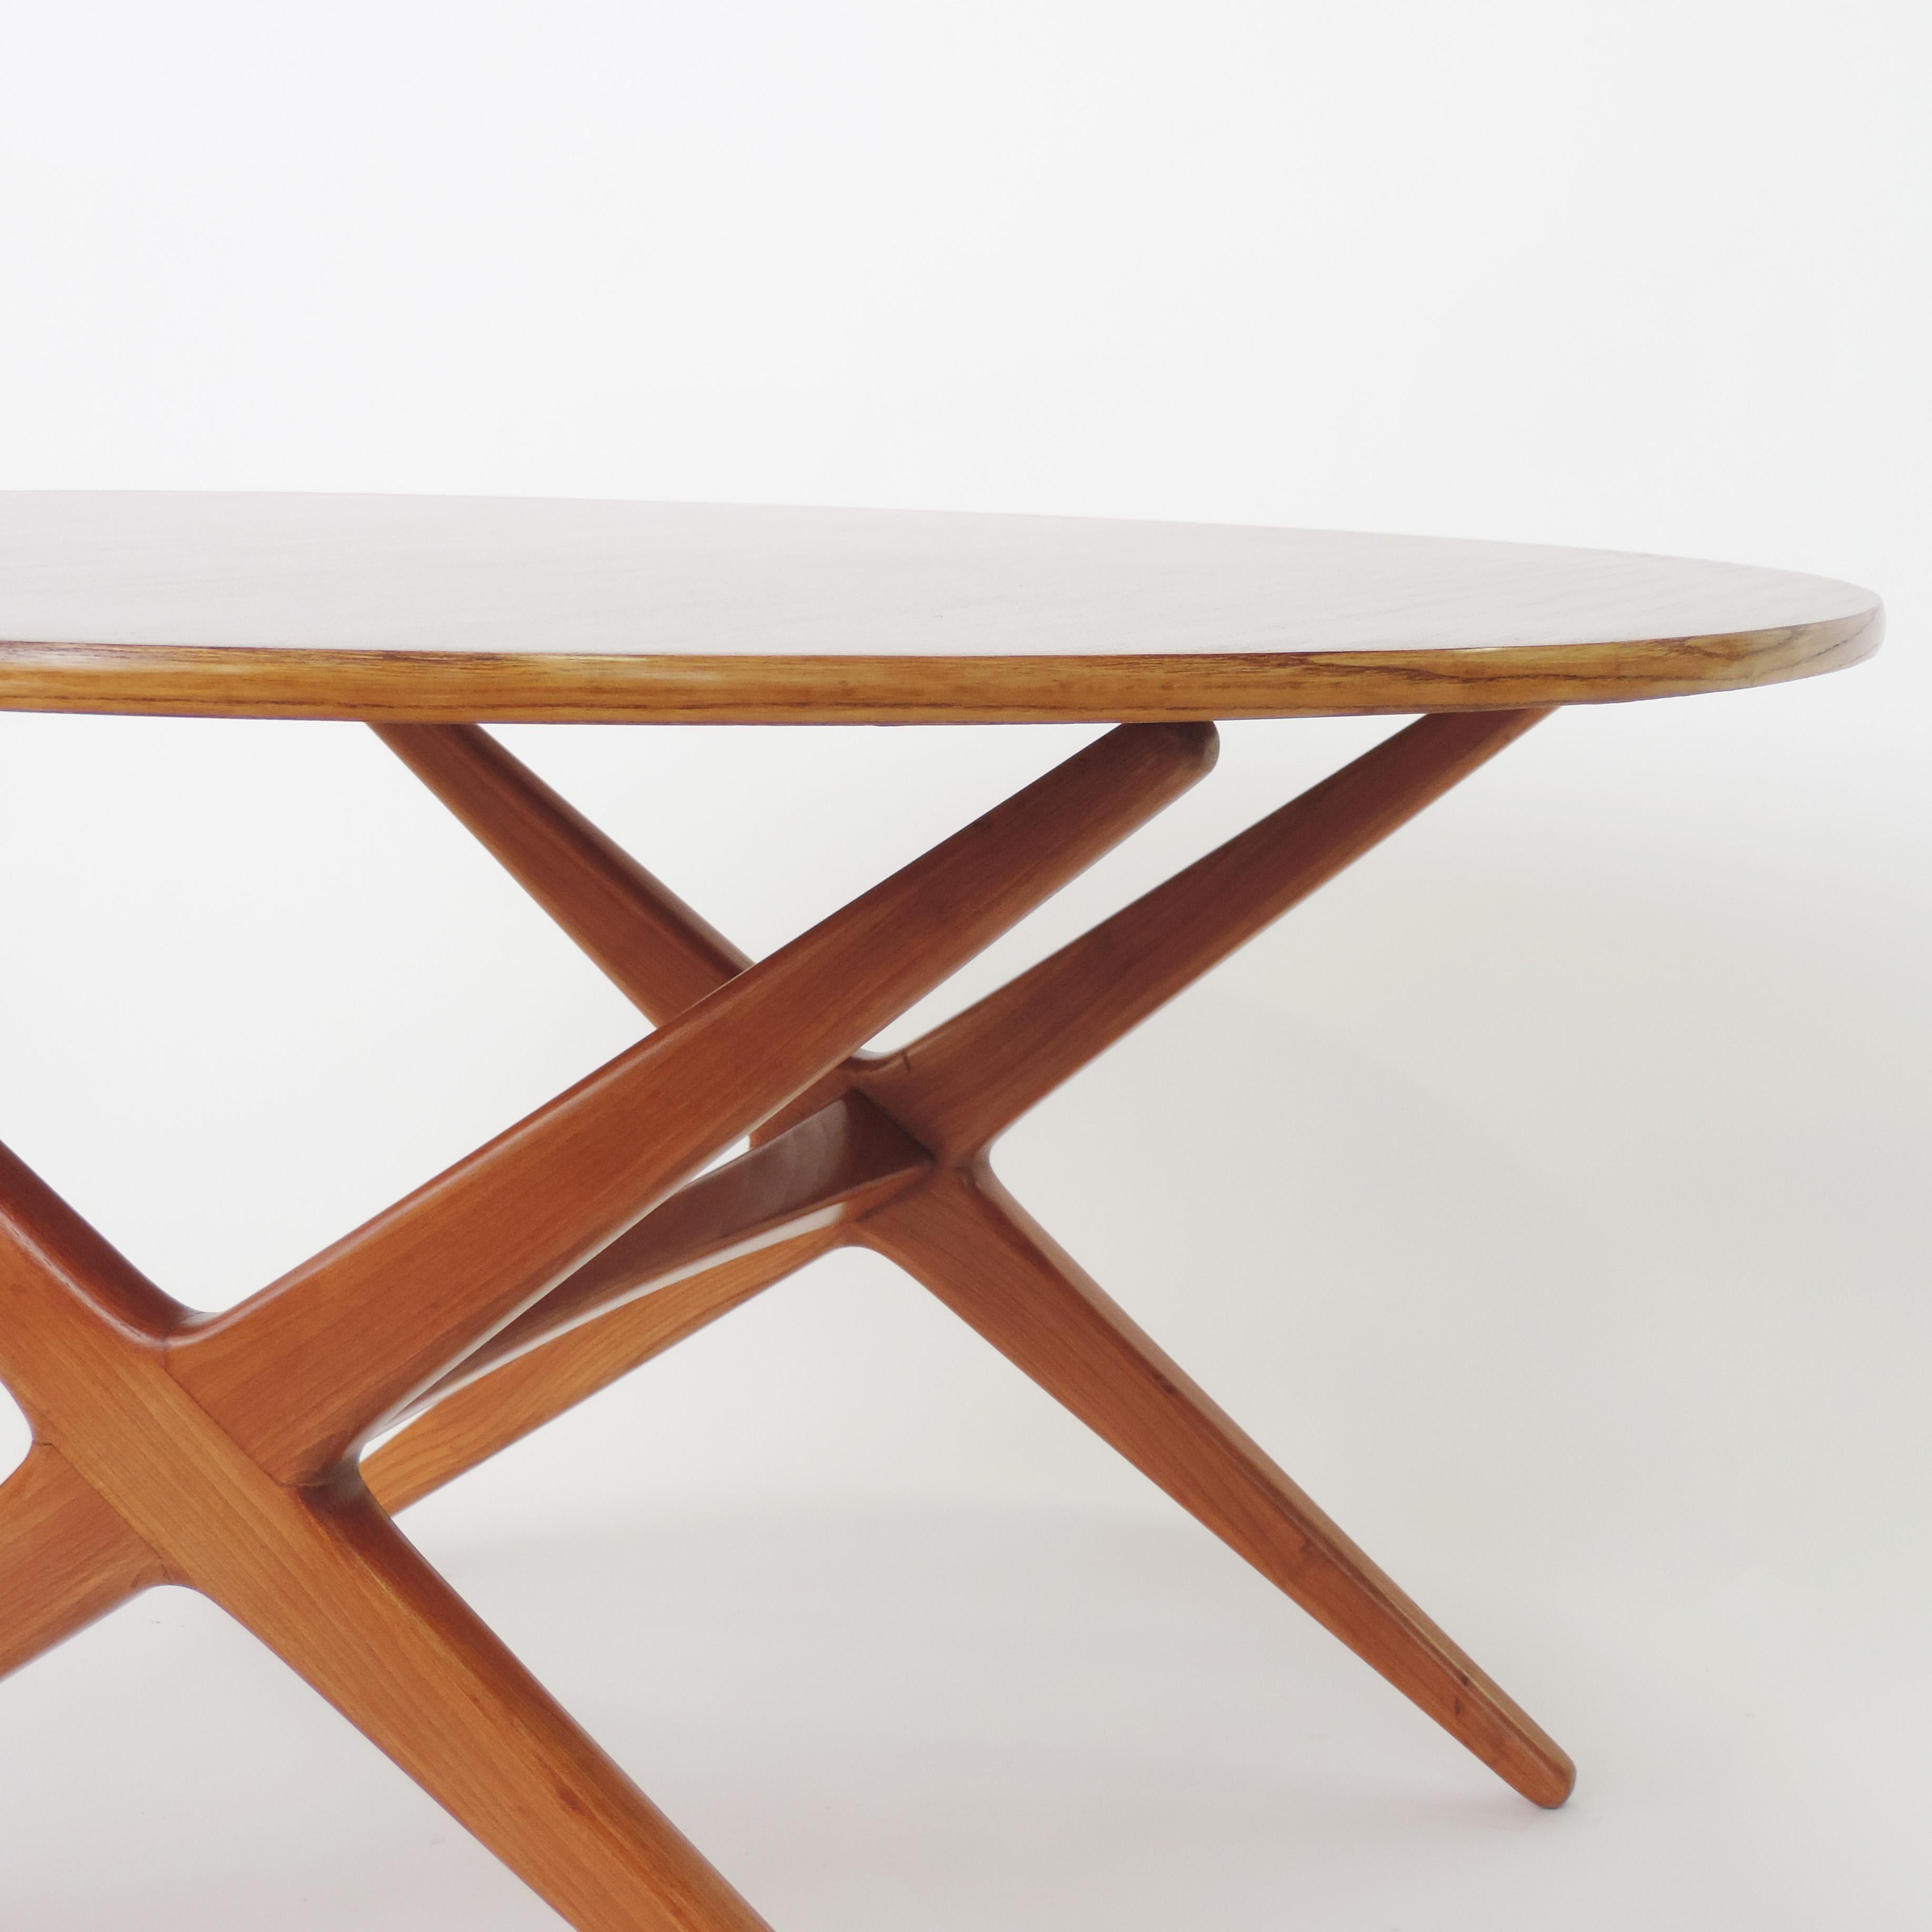 Table de salle à manger / table basse ajustable italienne des années 1950, attribuée à Ico Parisi.
Mesures : Diamètre : 100 cm.
Table basse de 57 cm de hauteur.
Hauteur de la table à manger 73cm.